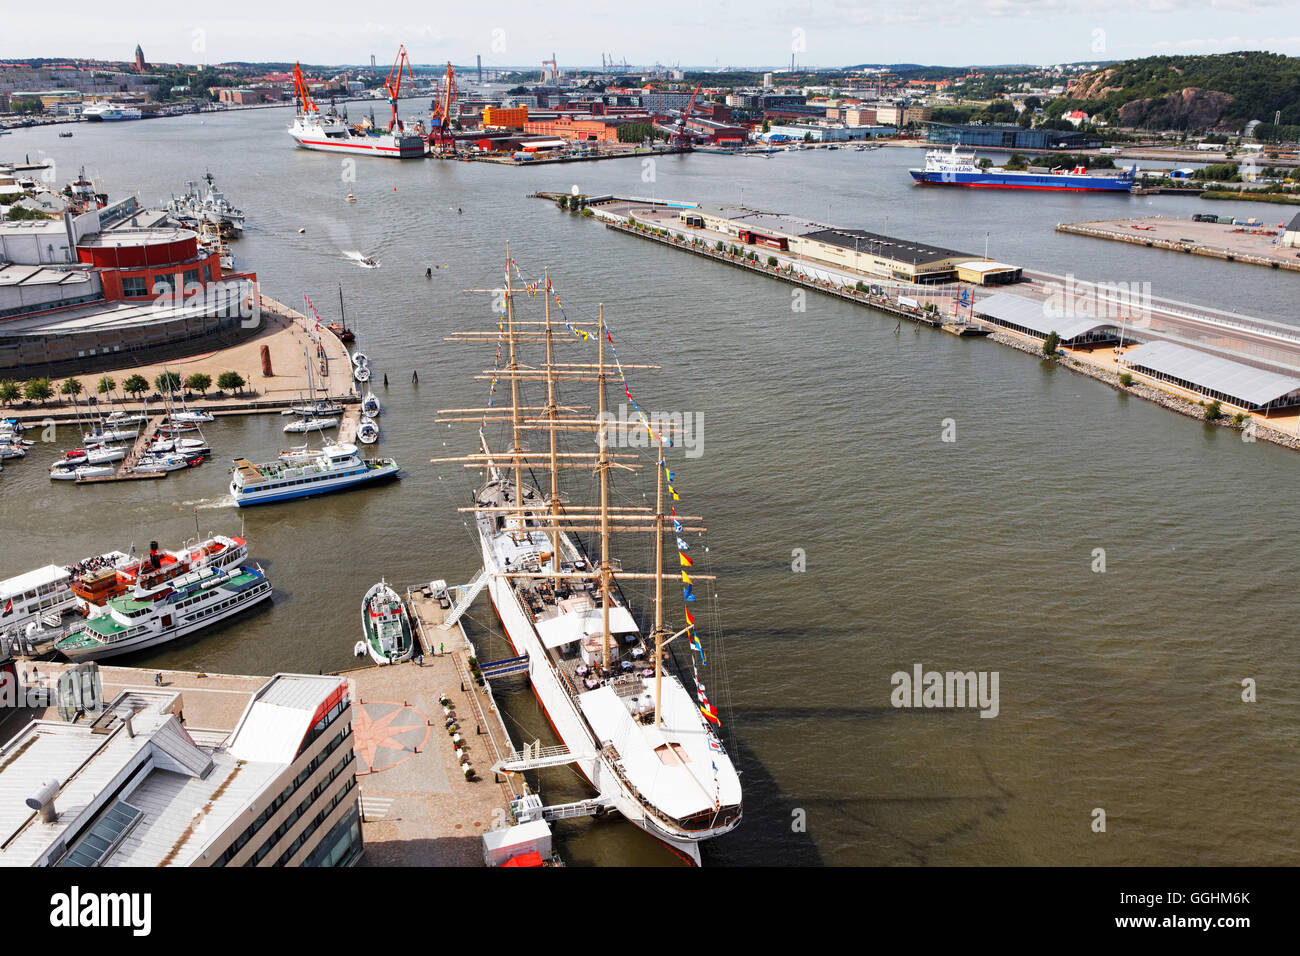 Vista desde la plataforma de observación de Lilla Bommen sobre el puerto de Gotemburgo, Suecia Foto de stock